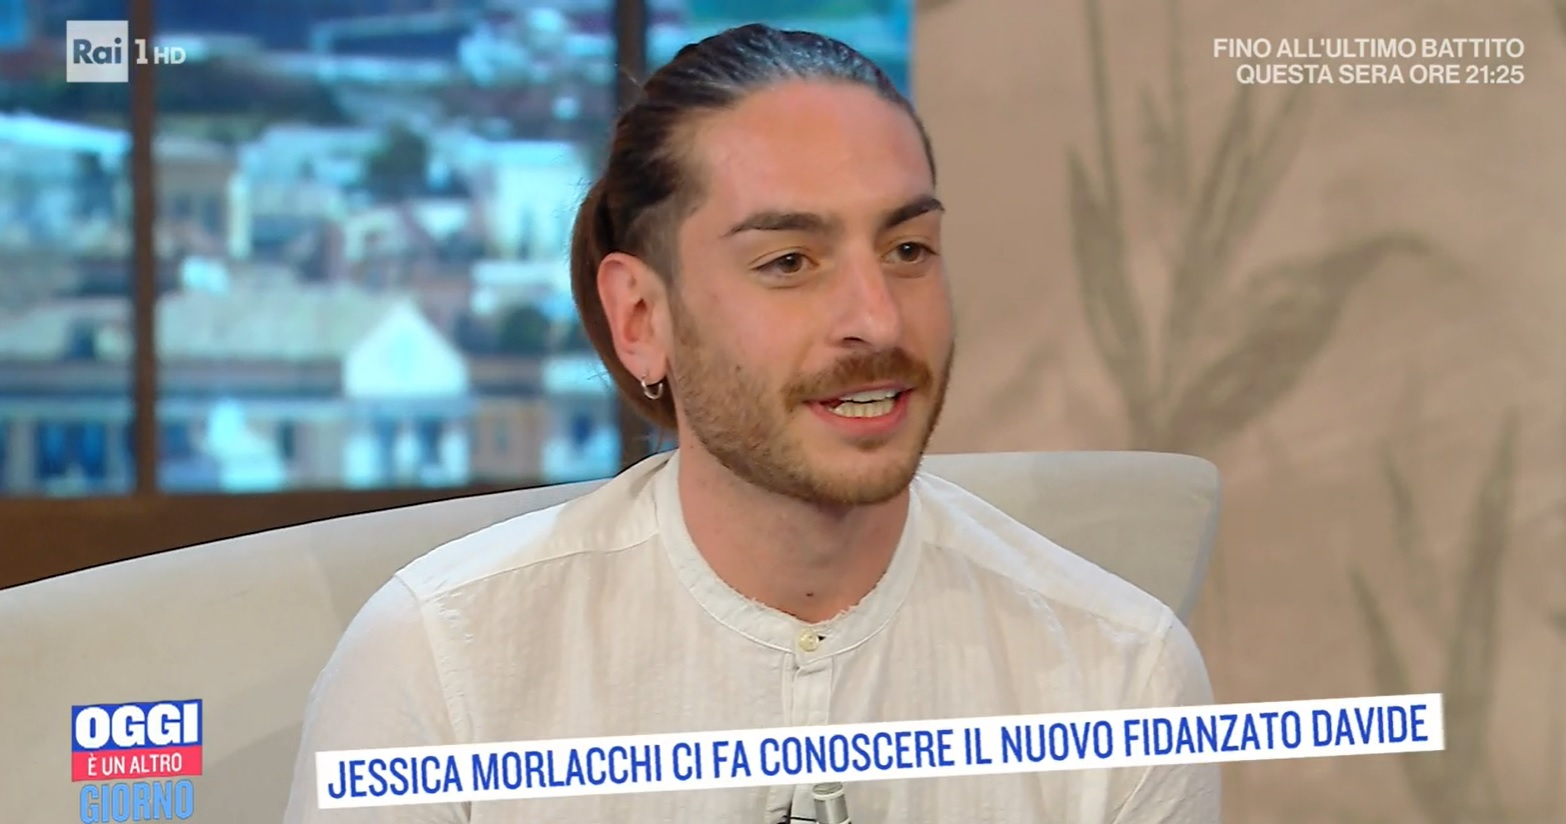 Jessica Morlacchi innamorata di Davide: “Fa il pasticciere ed è più giovane di me”